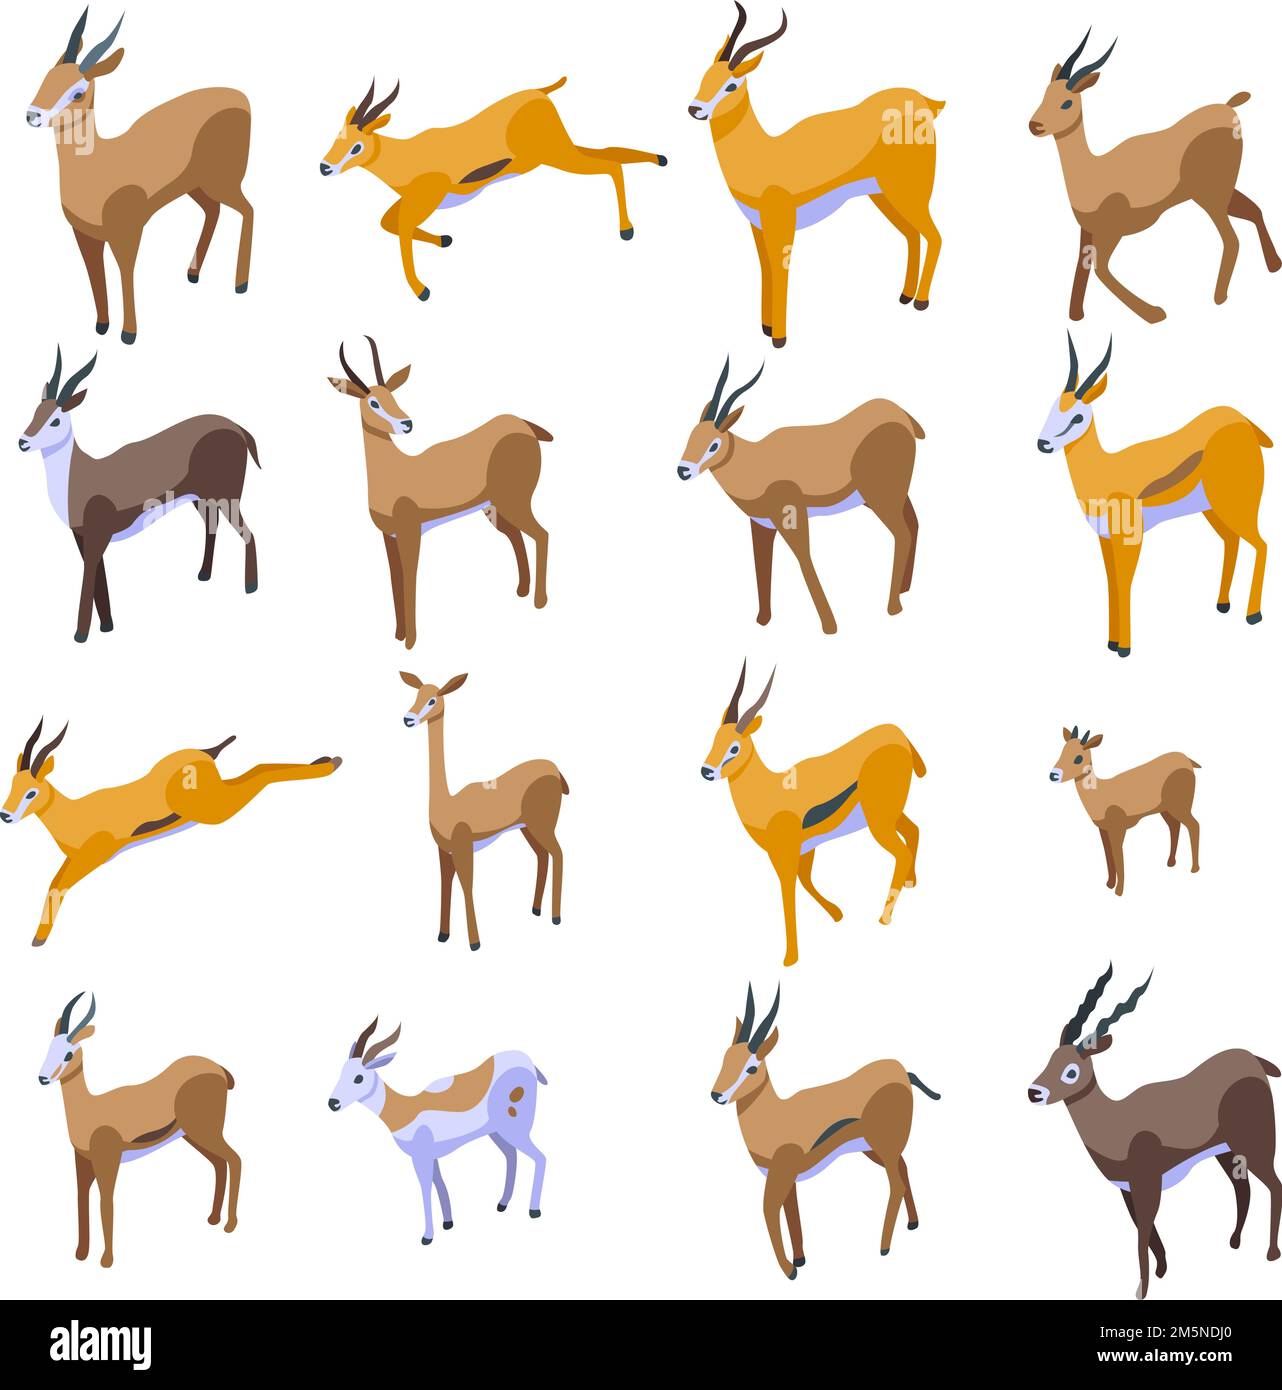 Icônes Gazelle. Ensemble isométrique d'icônes vectorielles gazelles pour la conception de sites Web isolée sur fond blanc Illustration de Vecteur